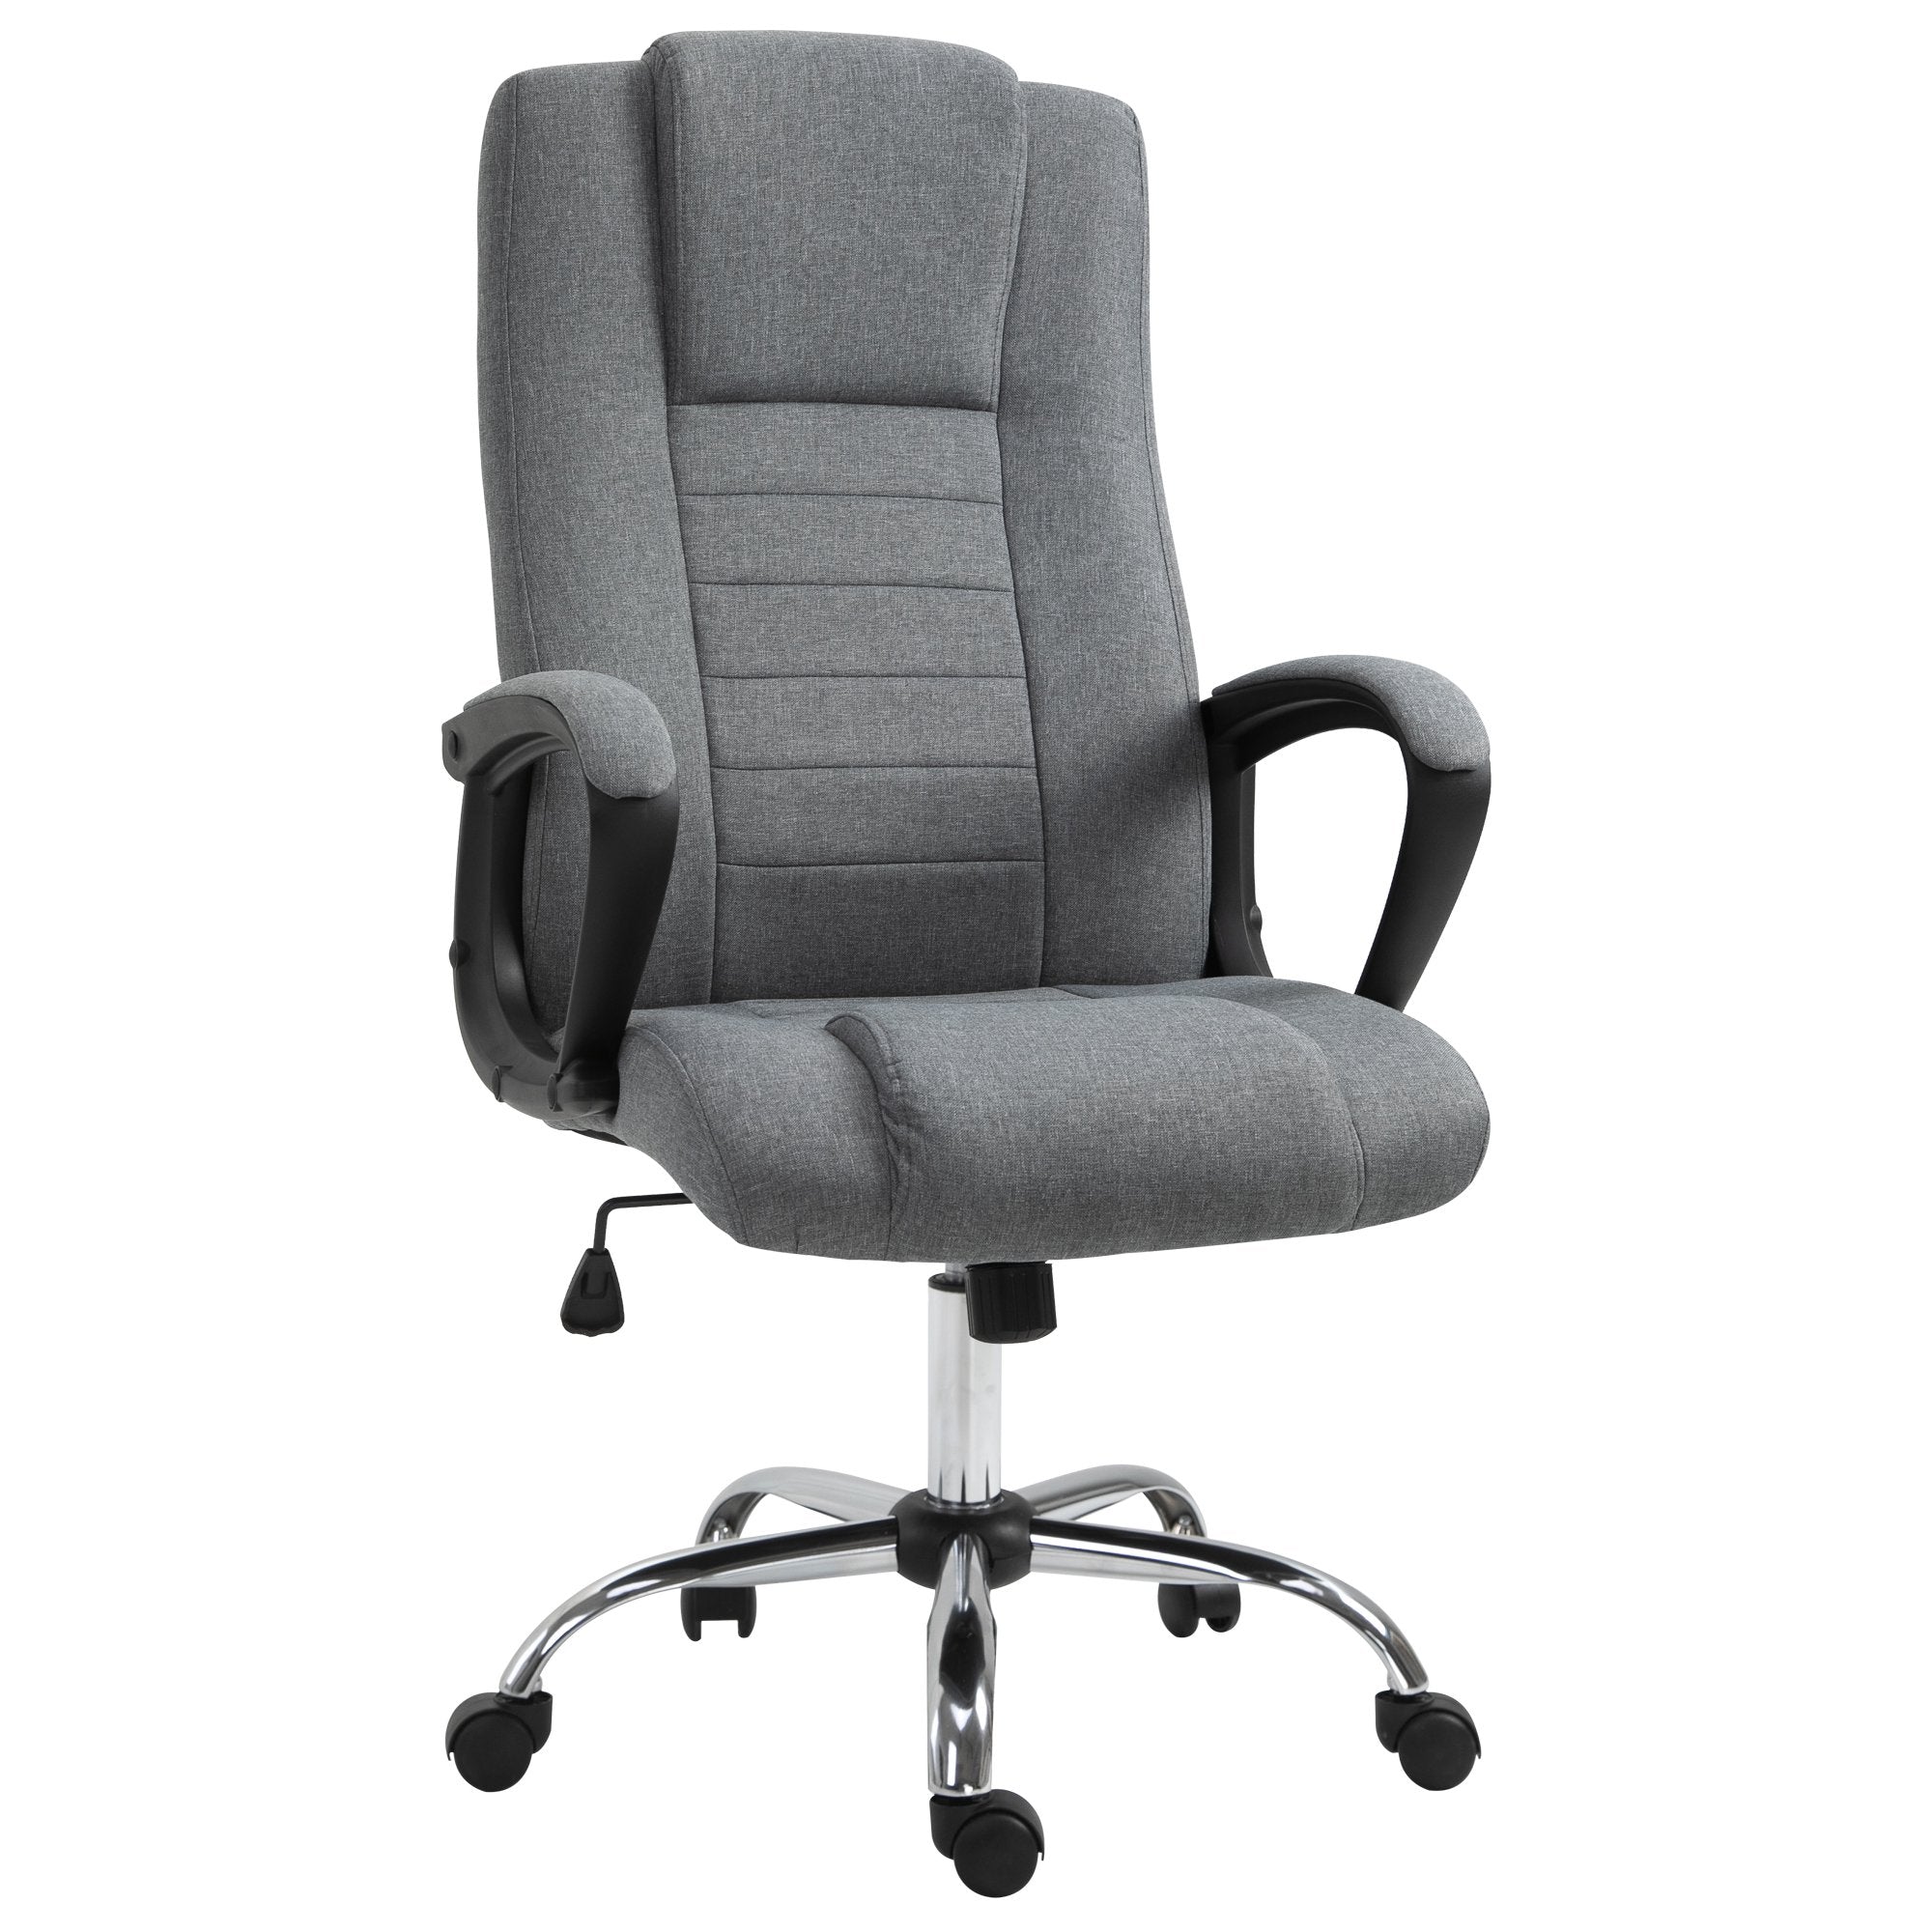 ProperAV Linen Upholstered Tilting Home Office Chair (Grey)